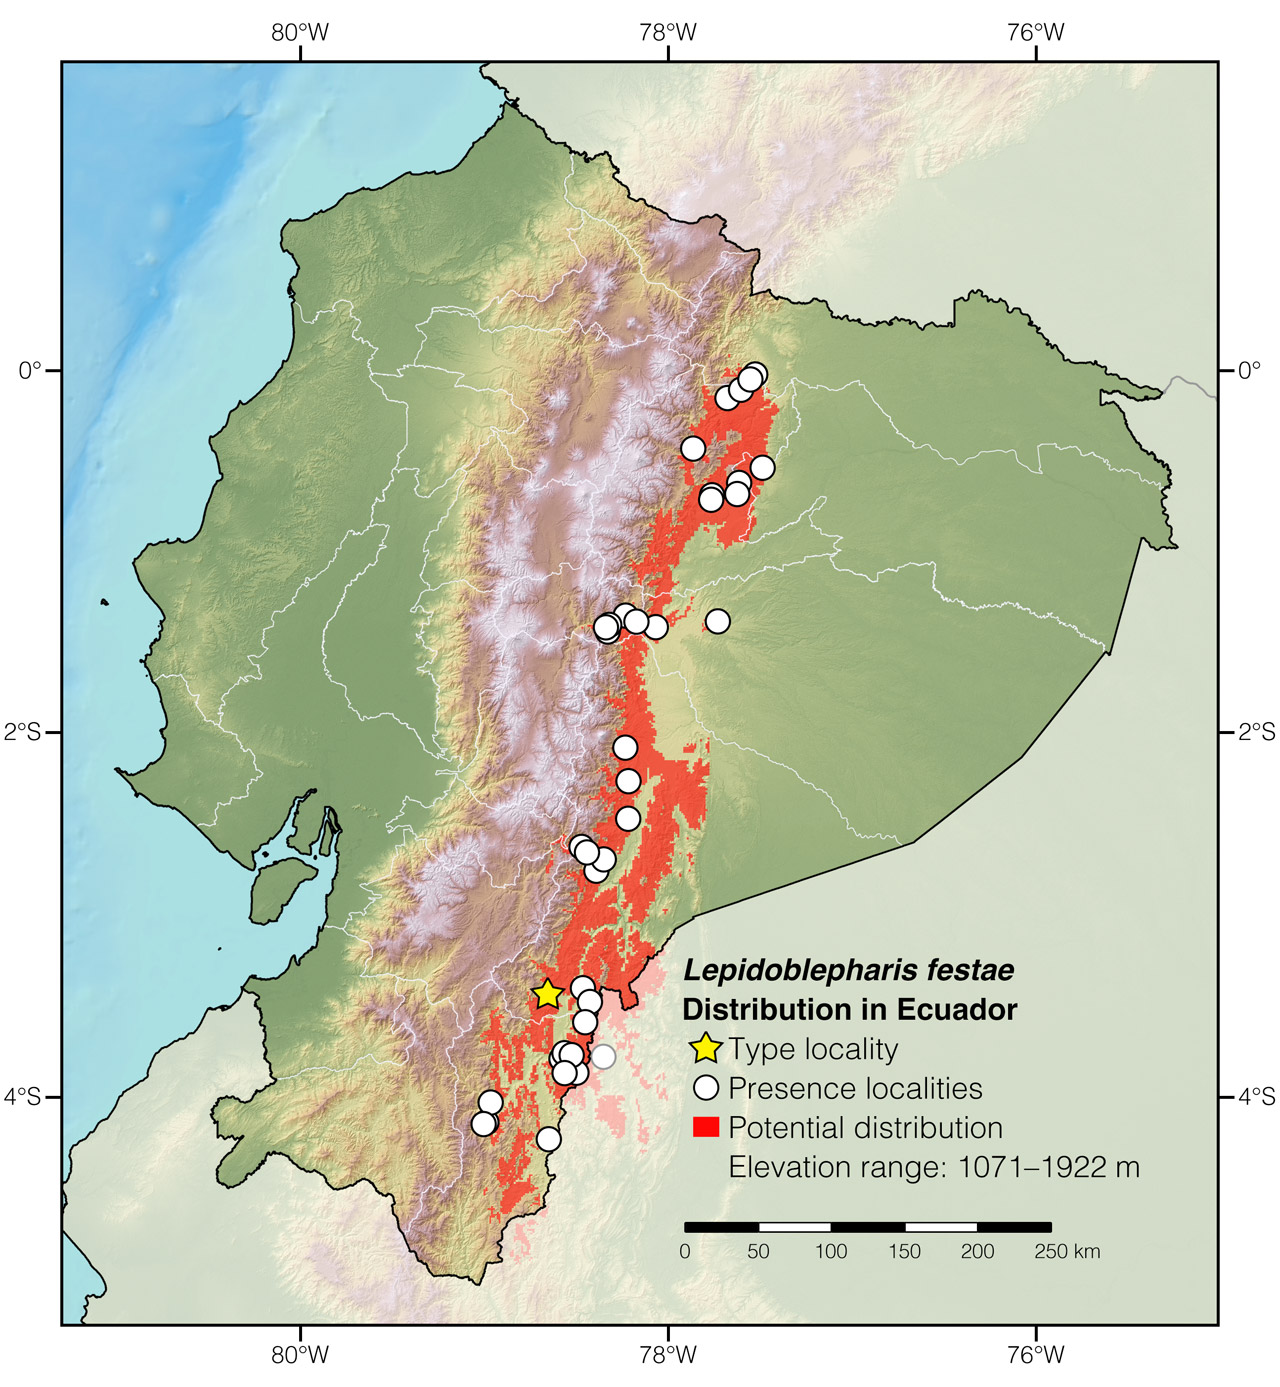 Distribution of Lepidoblepharis festae in Ecuador